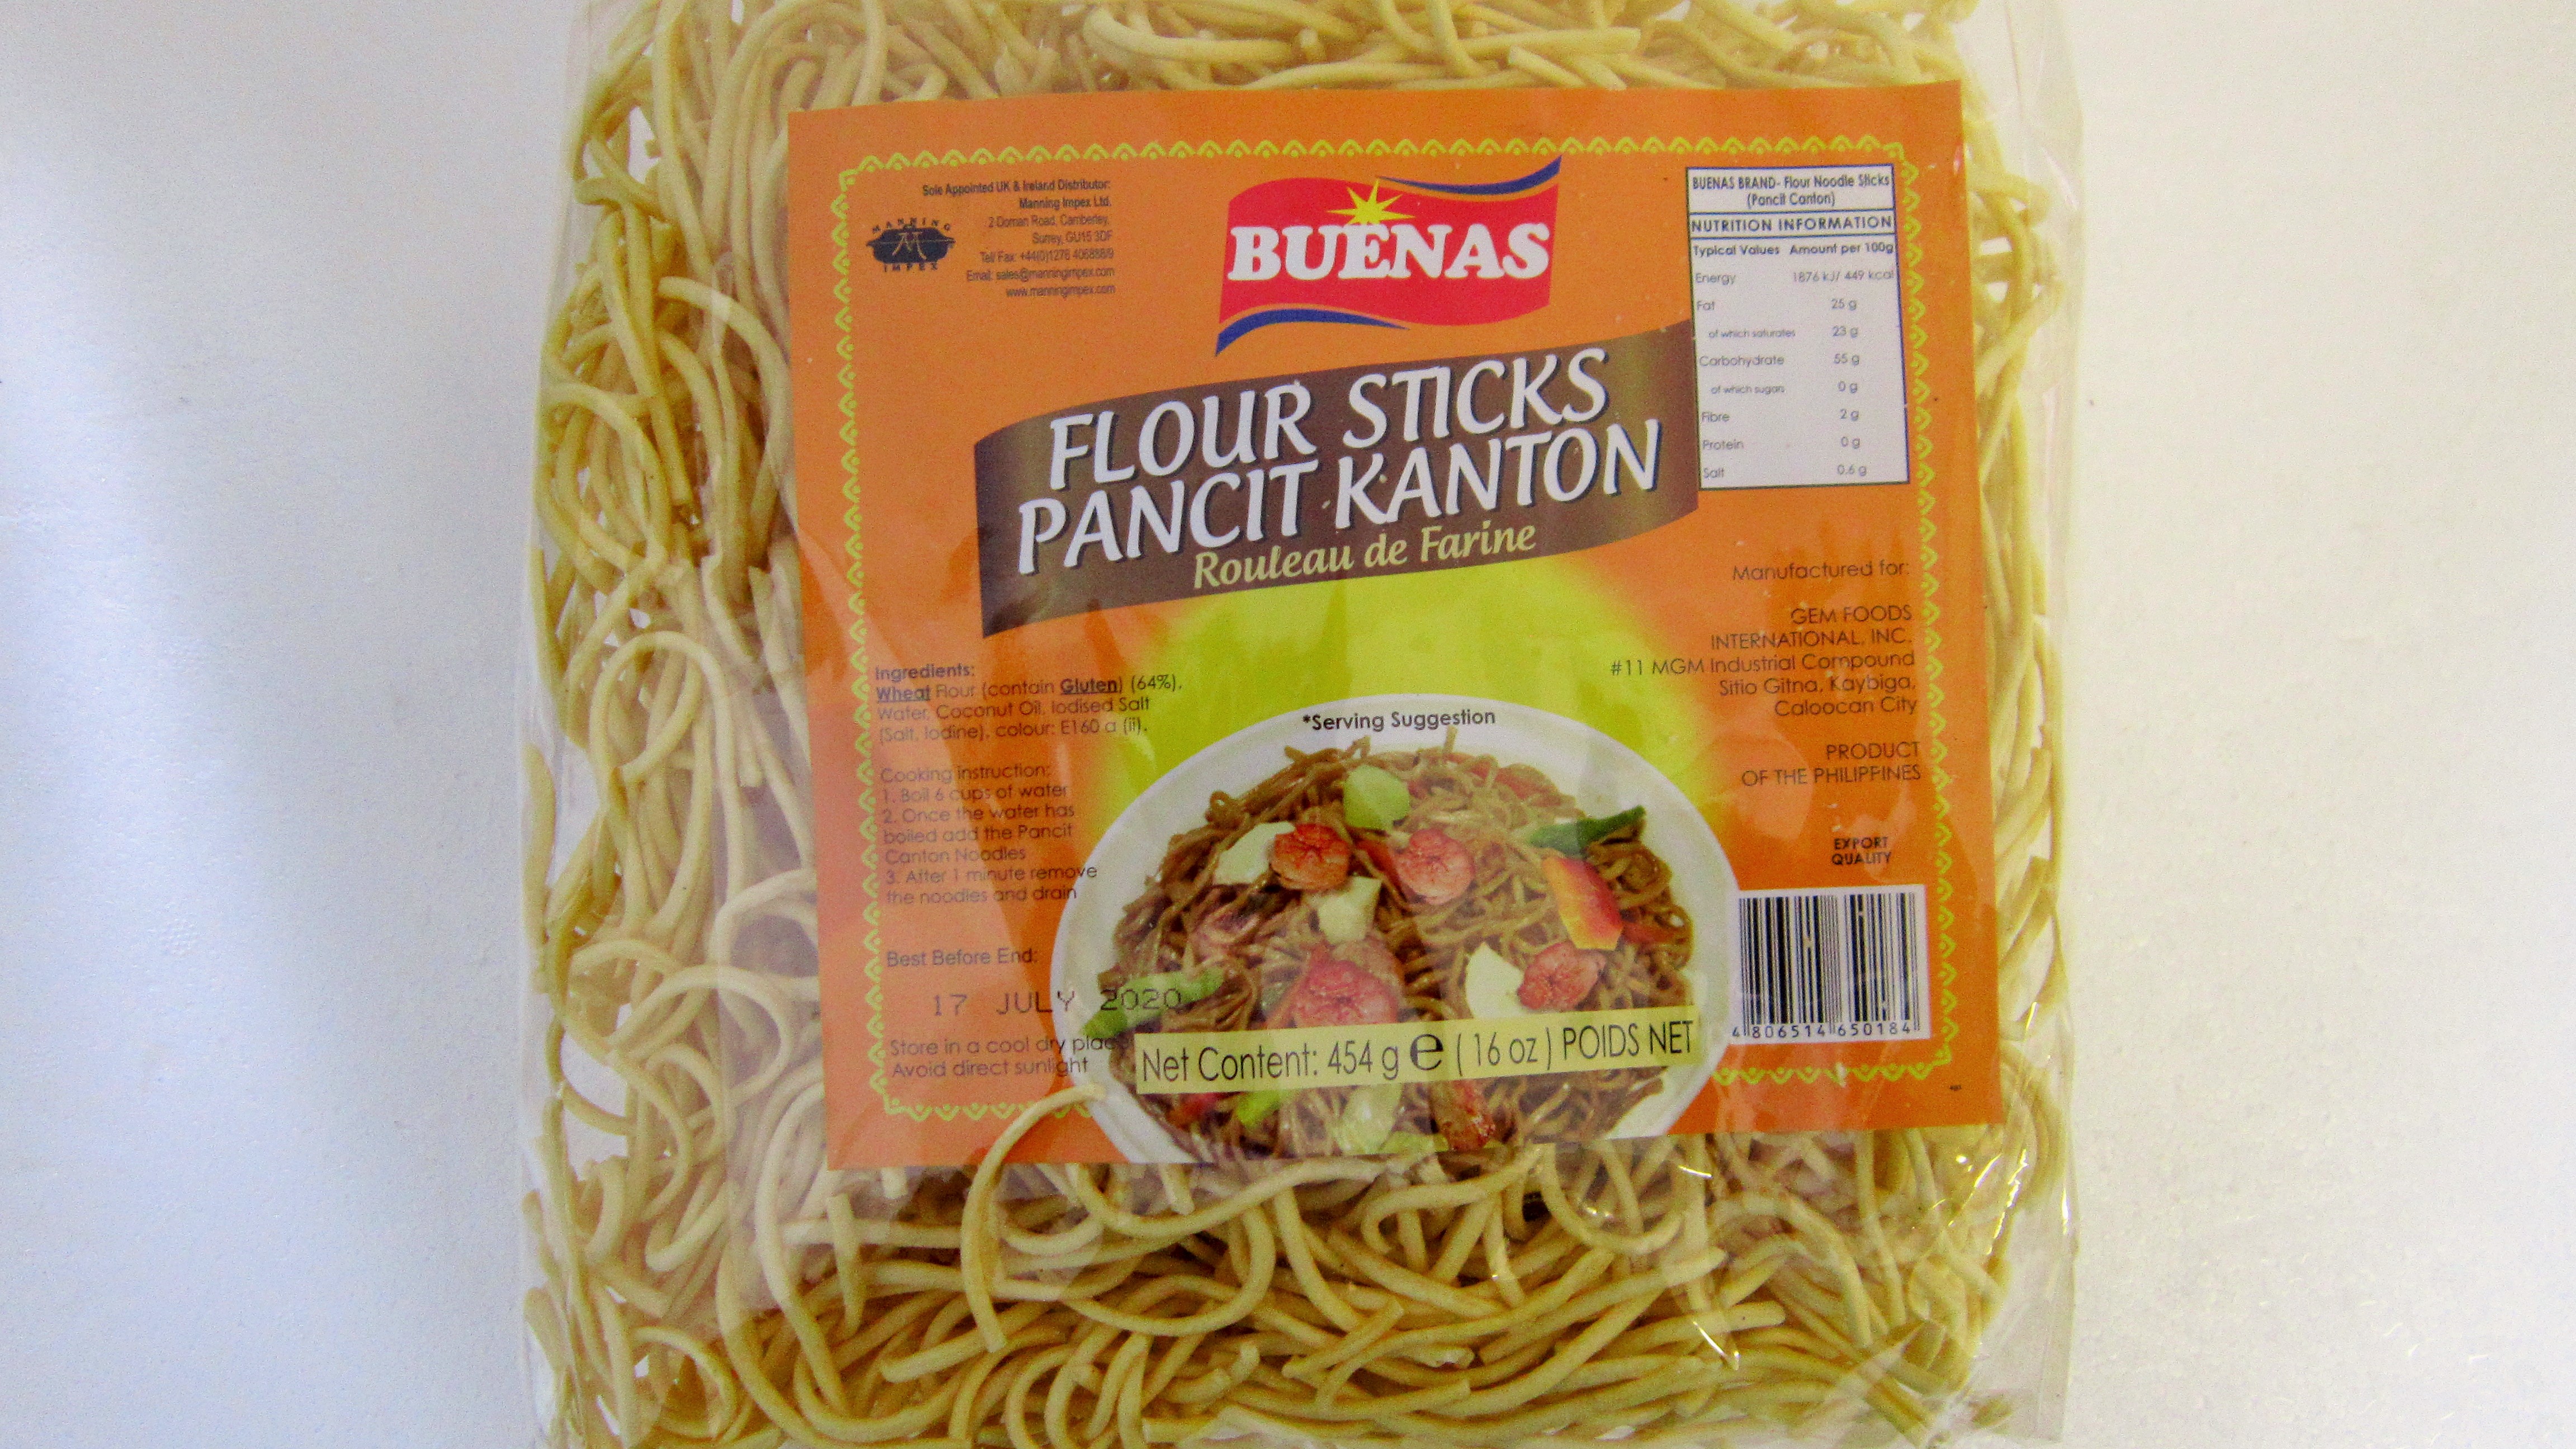 Buenas- Flour Sticks Pancit Kanton Image